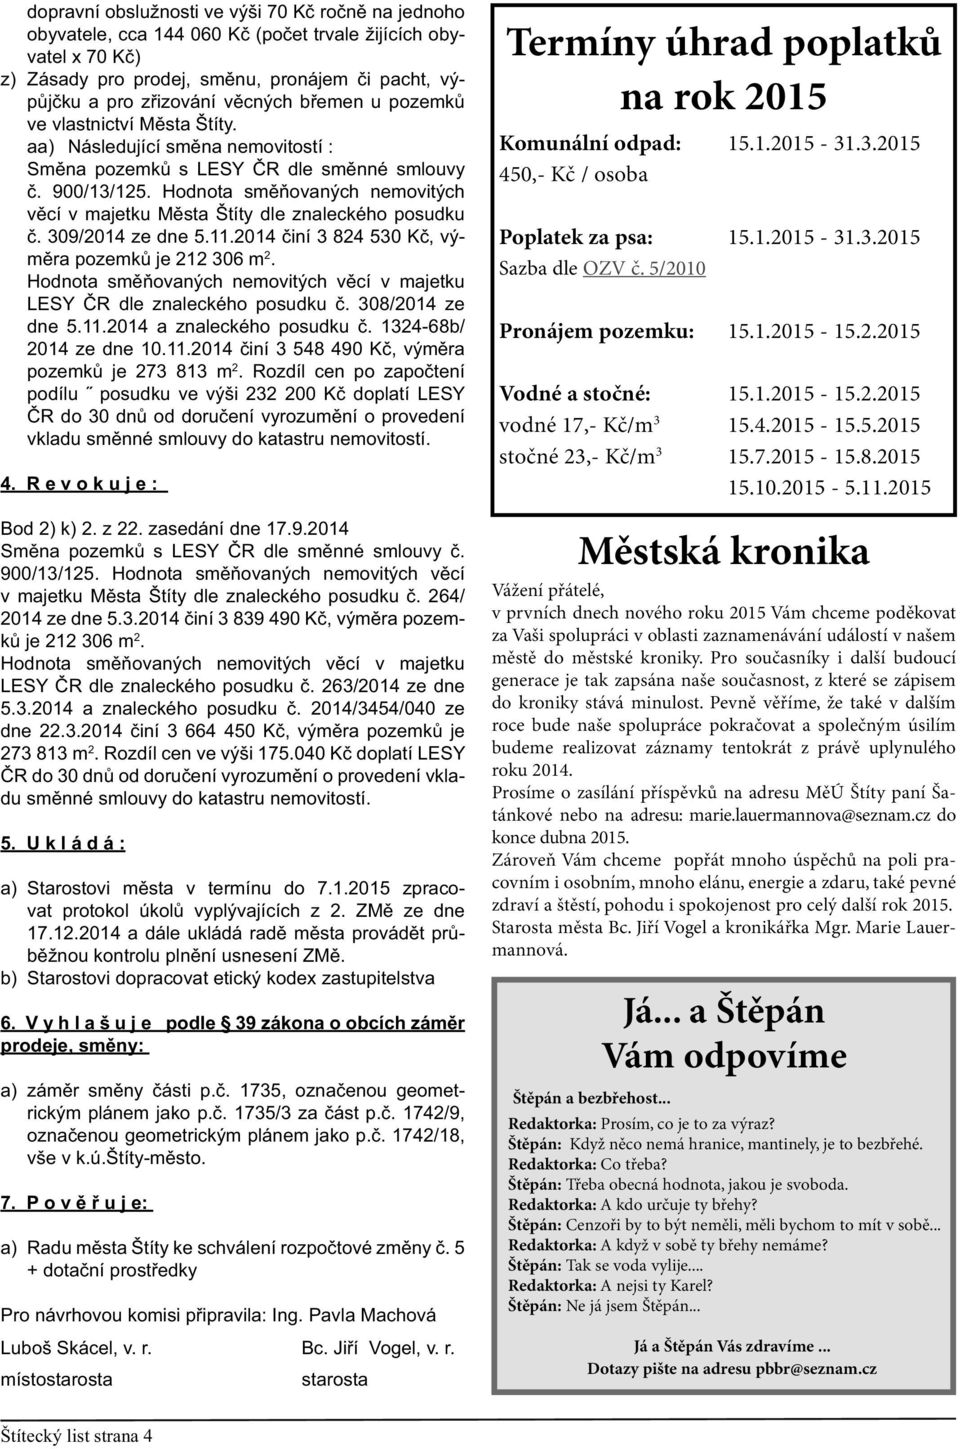 Hodnota směňovaných nemovitých věcí v majetku Města Štíty dle znaleckého posudku č. 309/2014 ze dne 5.11.2014 činí 3 824 530 Kč, výměra pozemků je 212 306 m 2.